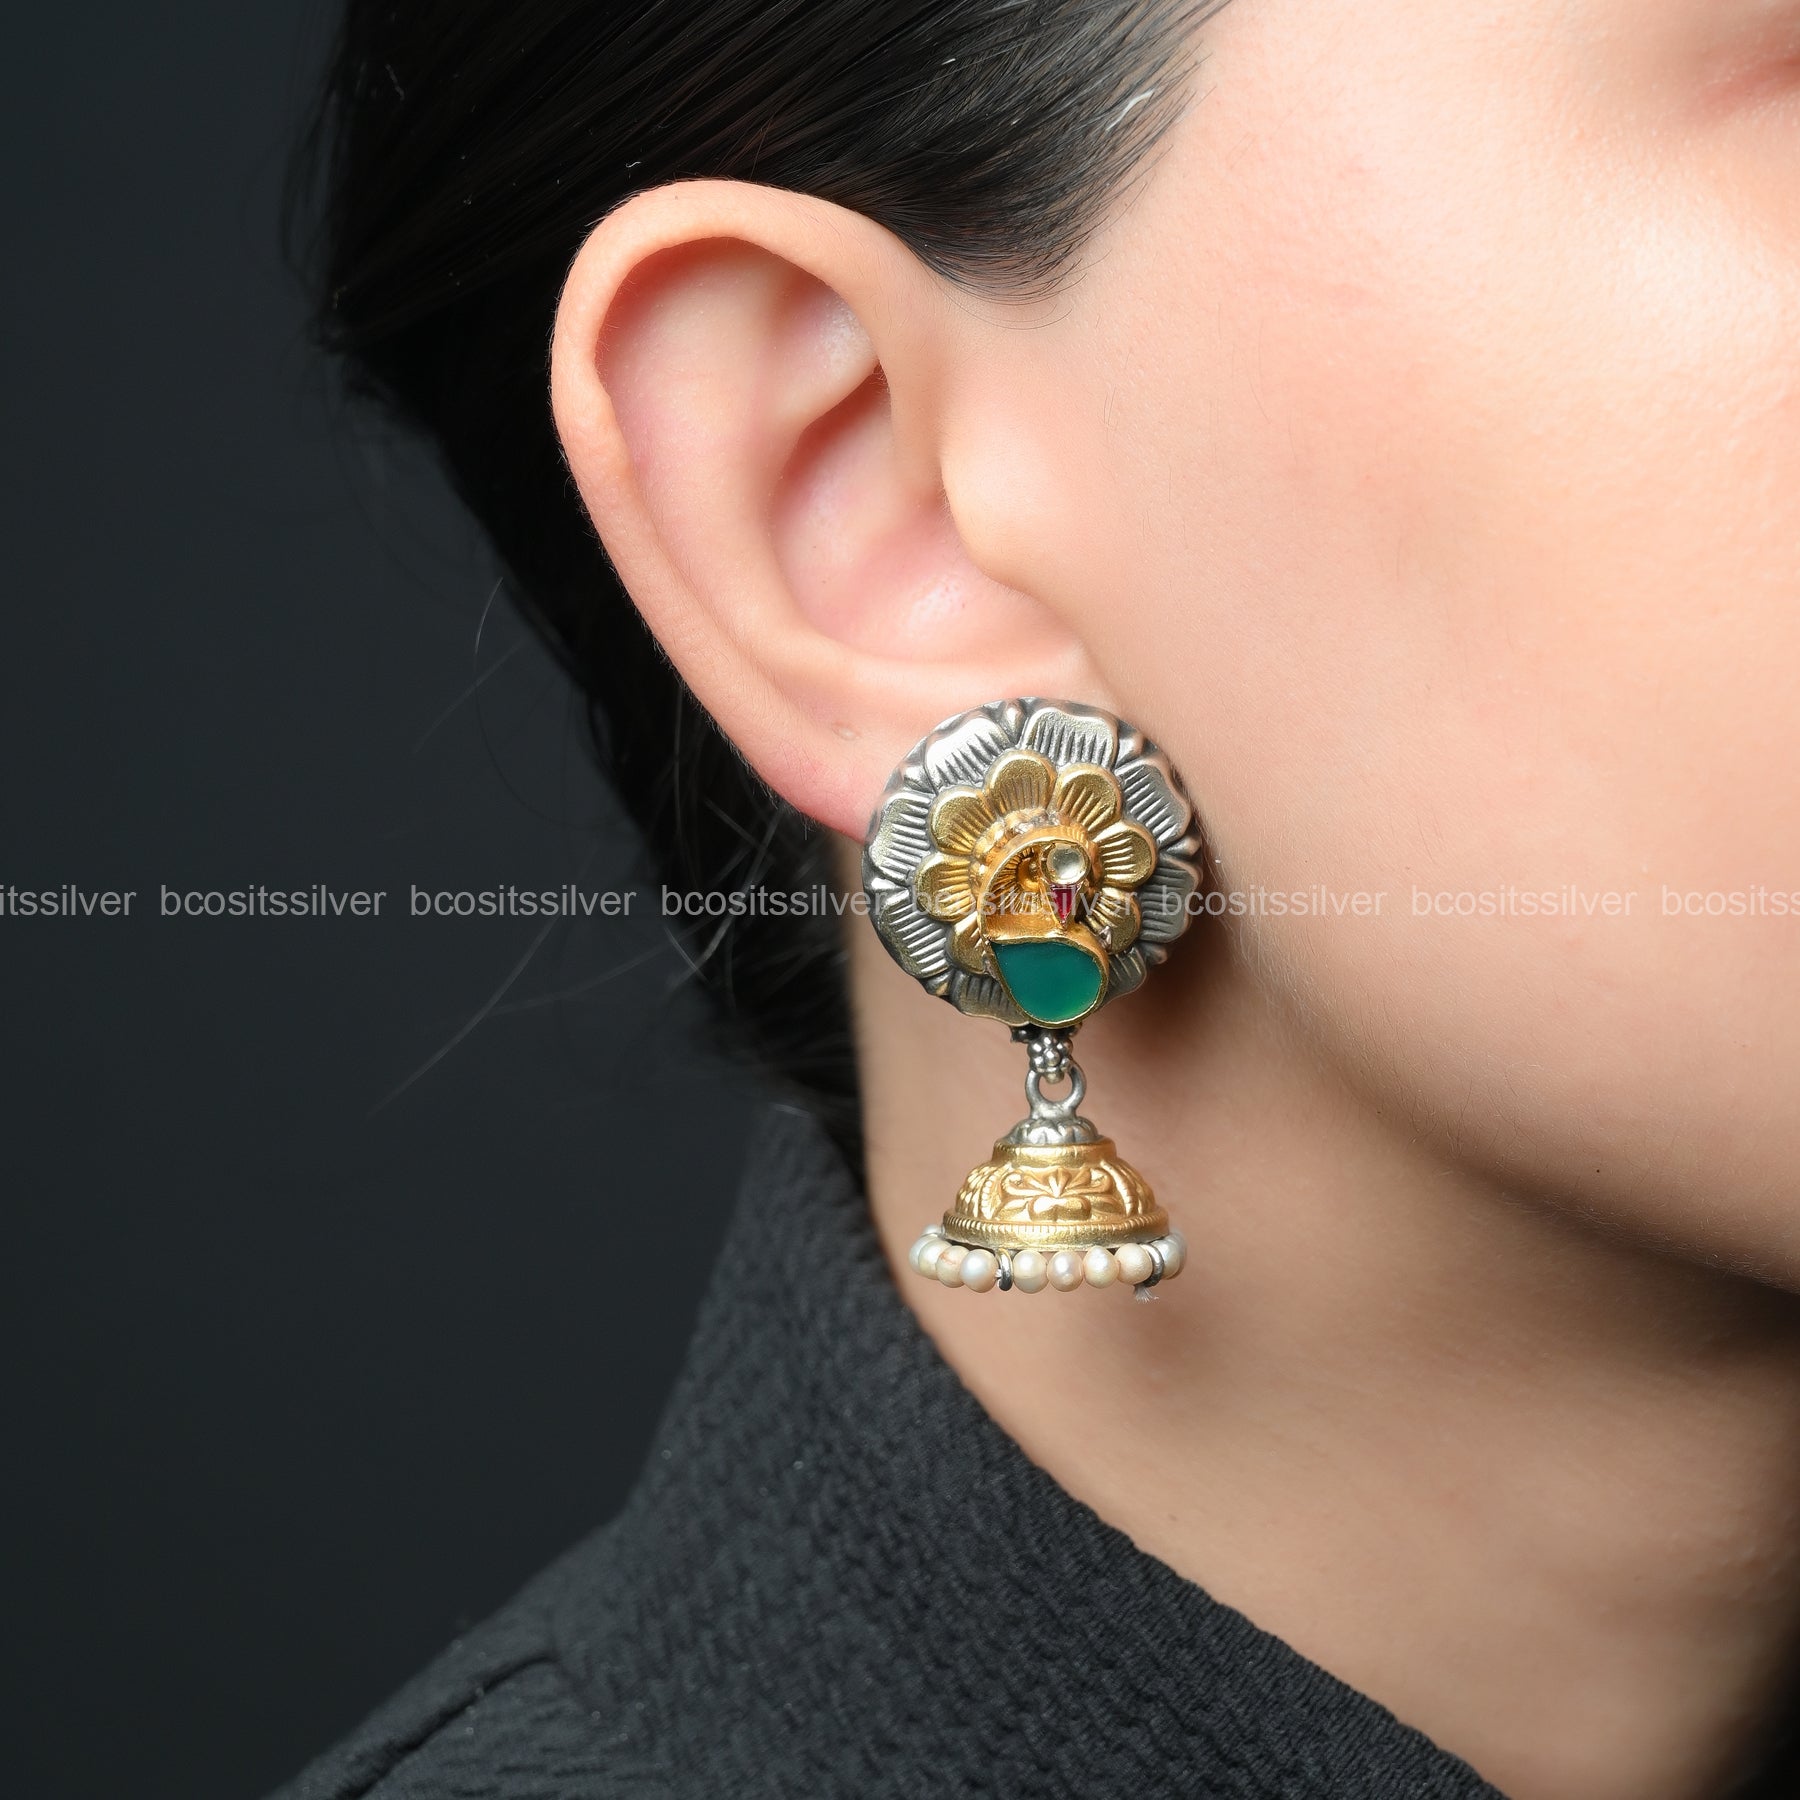 Oxidized Earring - 1535